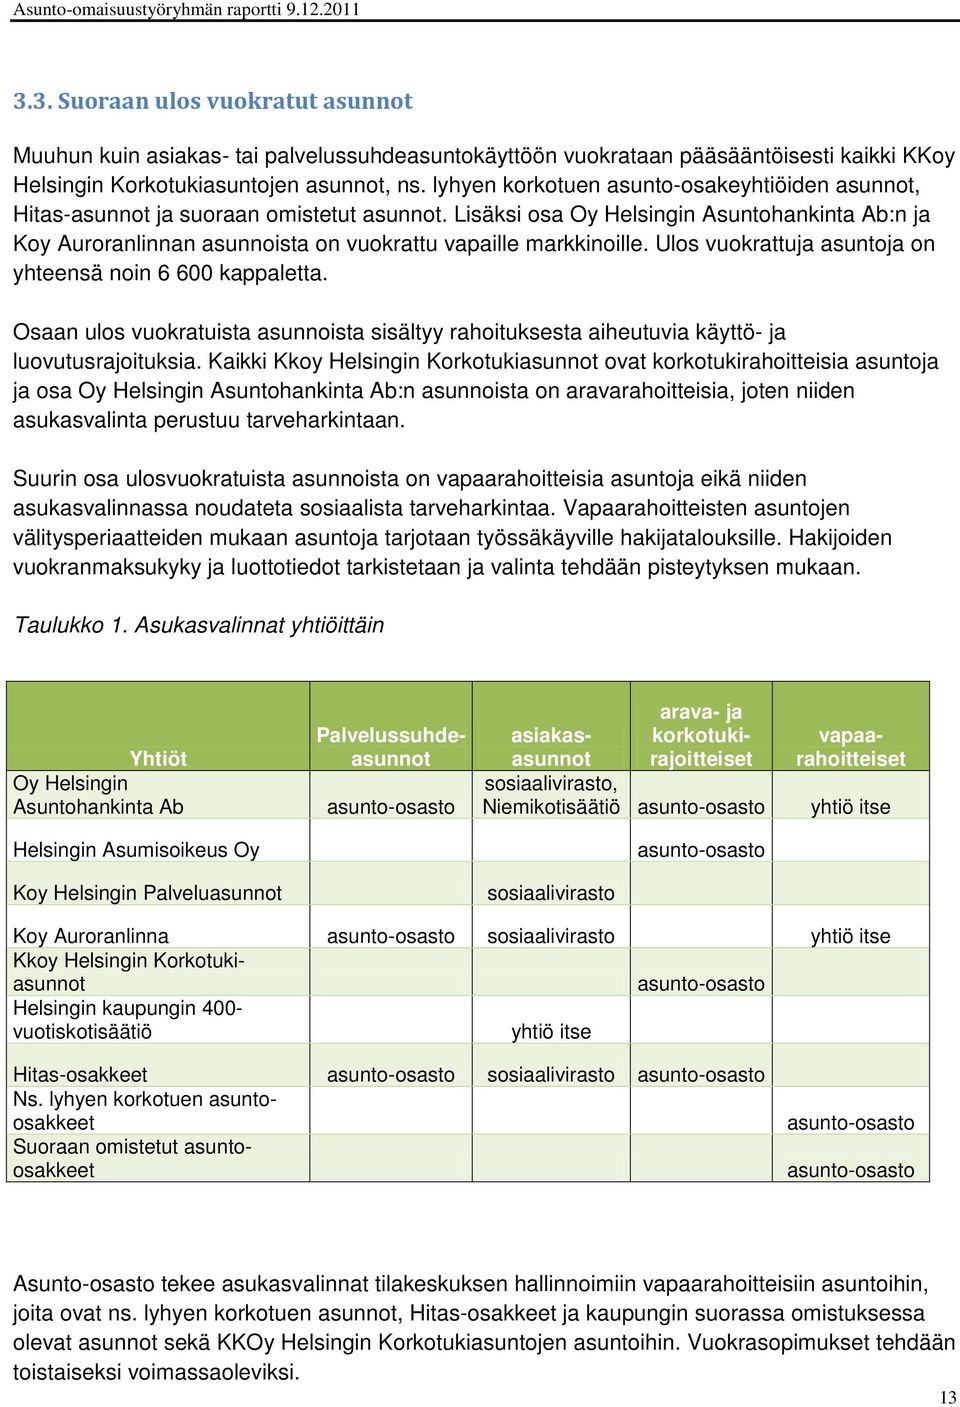 Lisäksi osa Oy Helsingin Asuntohankinta Ab:n ja Koy Auroranlinnan asunnoista on vuokrattu vapaille markkinoille. Ulos vuokrattuja asuntoja on yhteensä noin 6 600 kappaletta.